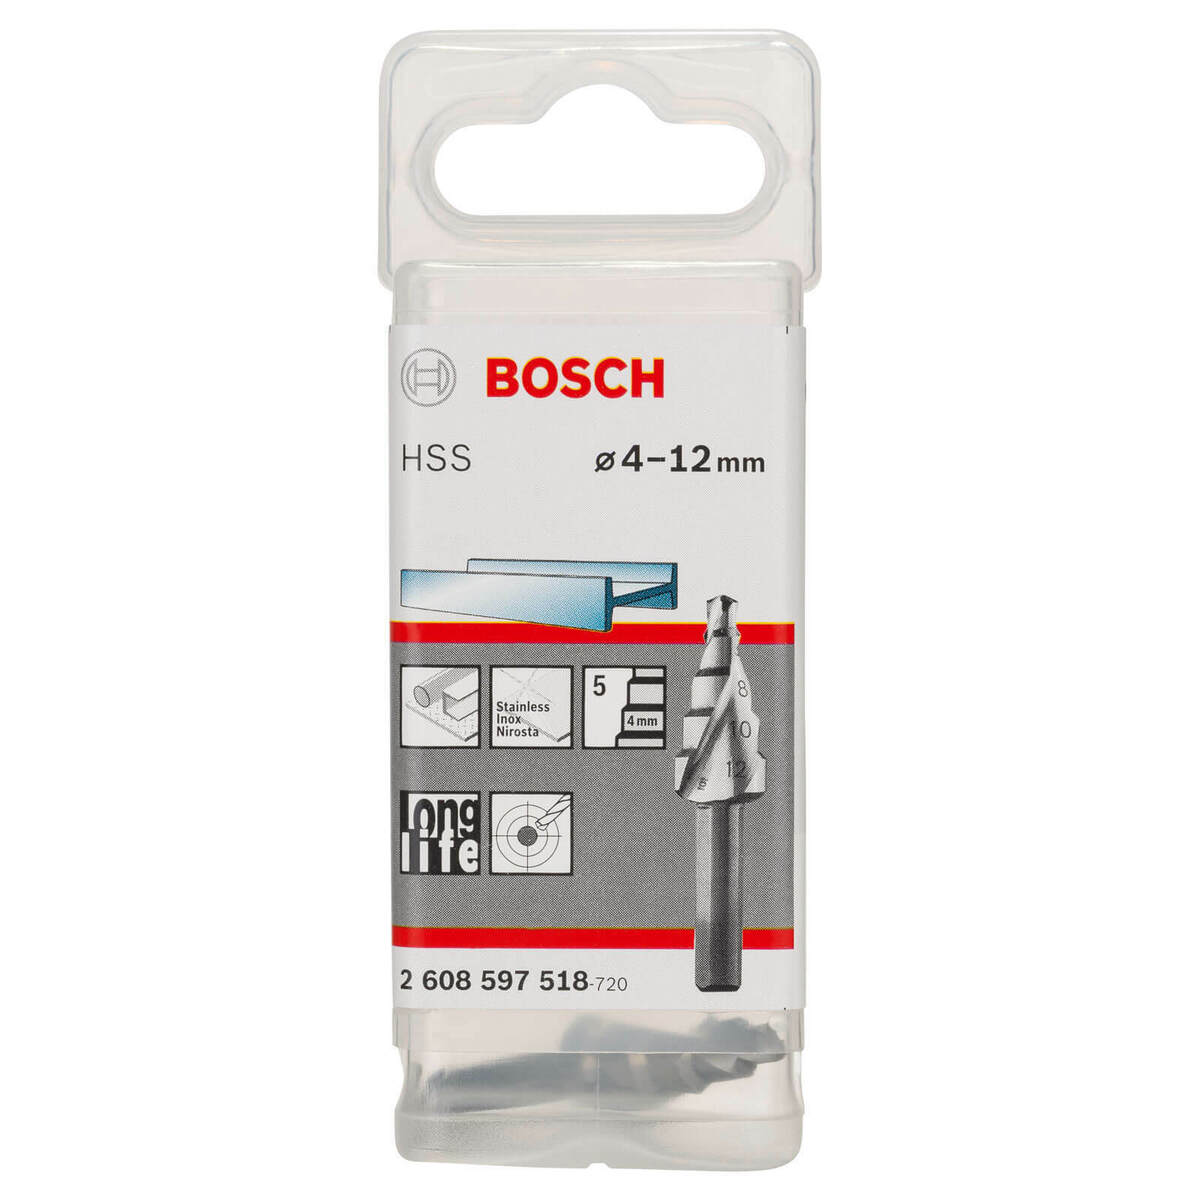 Bosch HSS Step Drill Bit 4-12mm 2608597518 Power Tool Services